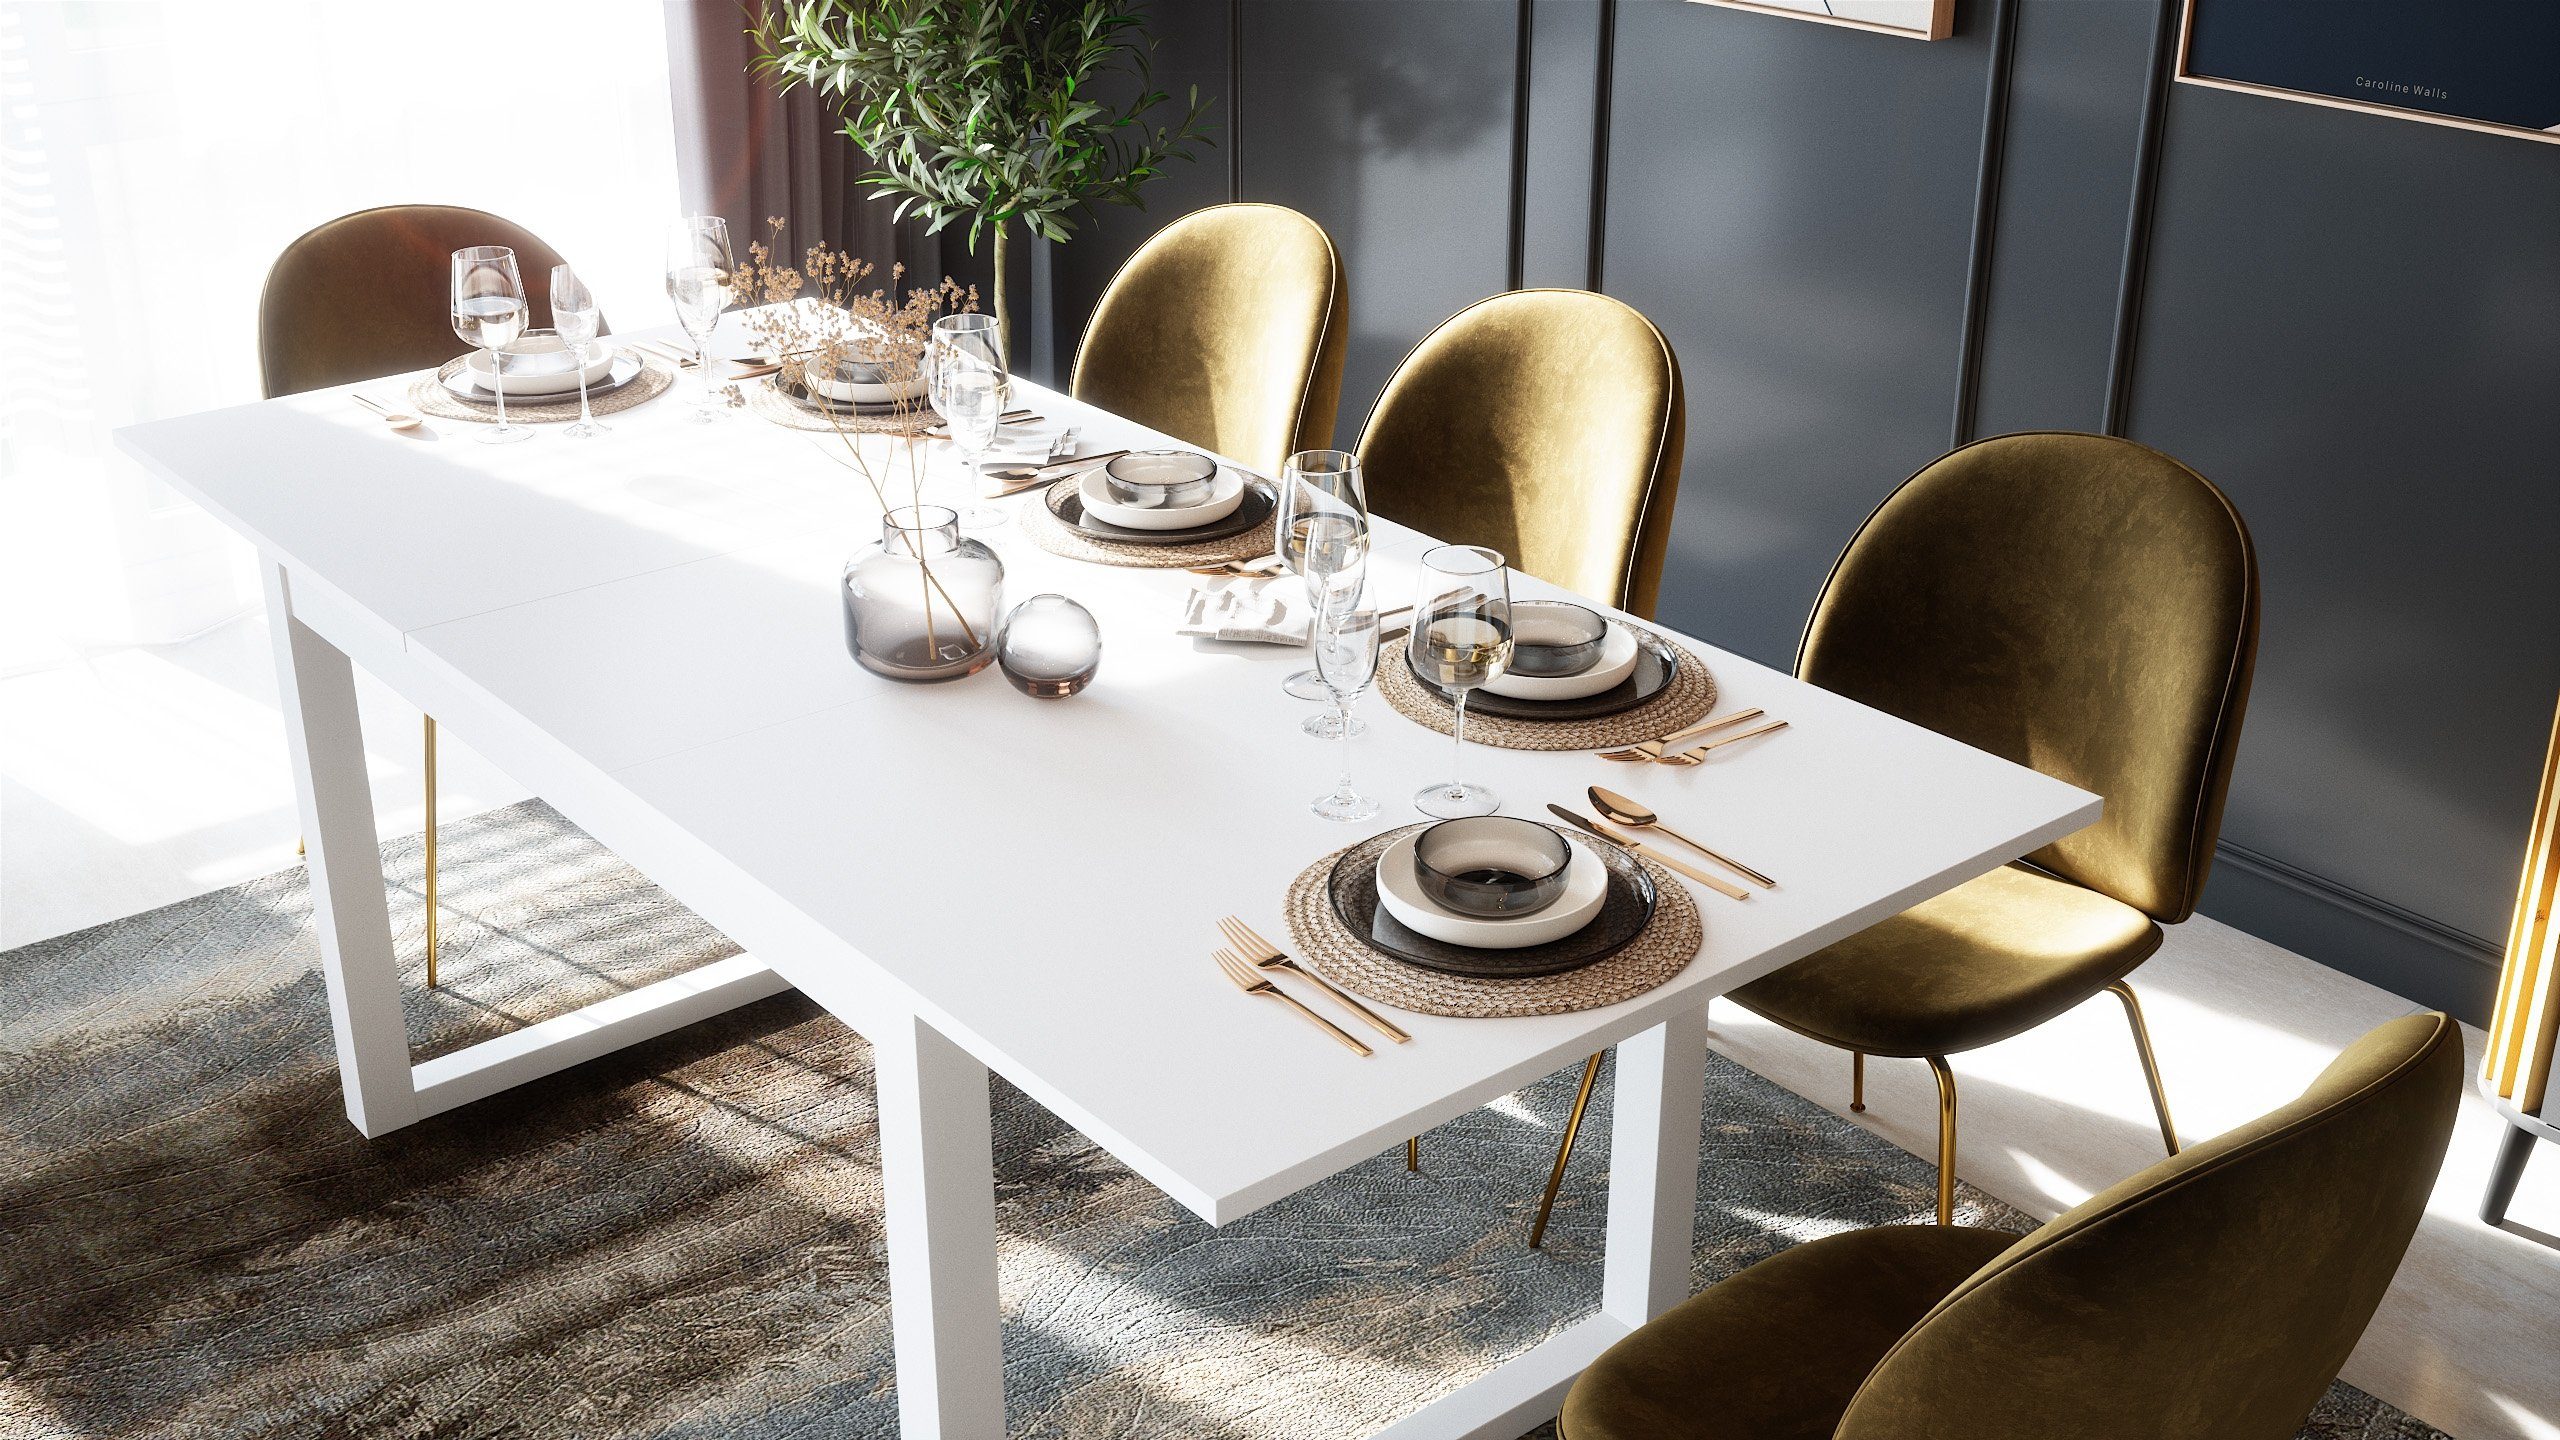 Newroom Esstisch, ausziehbar 160-200 in Weiß cm Modern Landhaus Tischplatte inkl